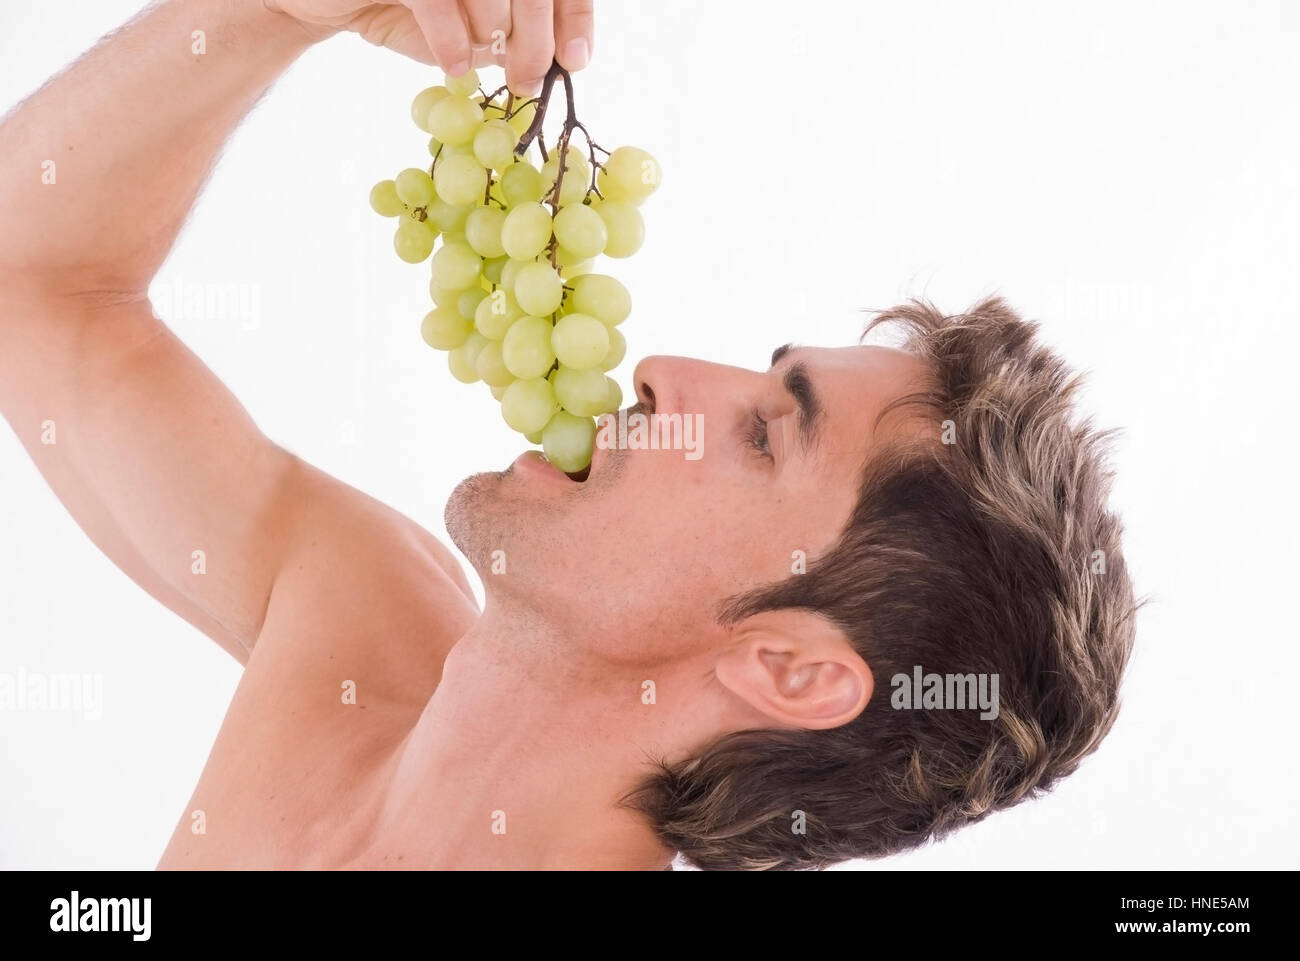 Model Release, Mann, 35 +, Isst Gruene Weintrauben - Trauben isst der Mensch Stockfoto